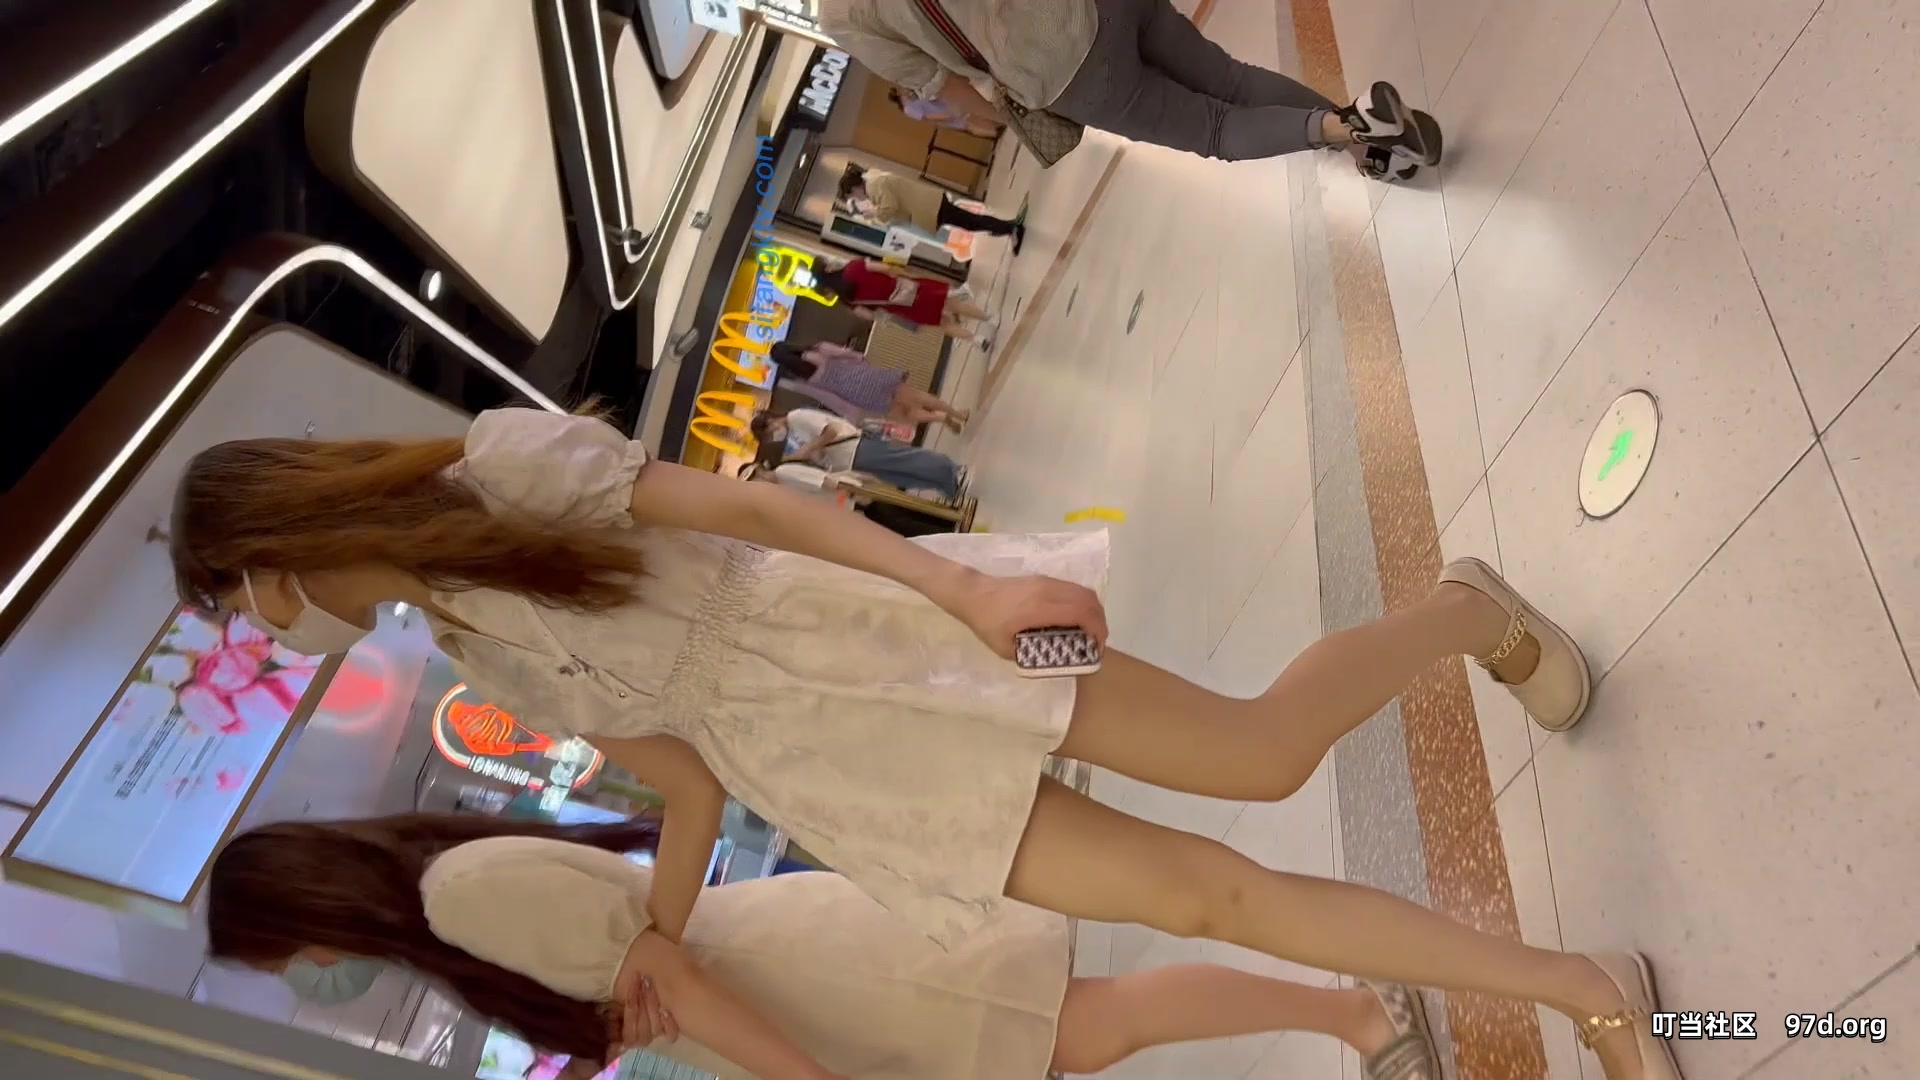 쇼핑몰은 팔만큼 가느다란 다리를 가진 여학생을 쫓고 있고, 그녀의 깊고 긴 엉덩이 갈라짐이 반투명 란제리를 밀어내고 있습니다.